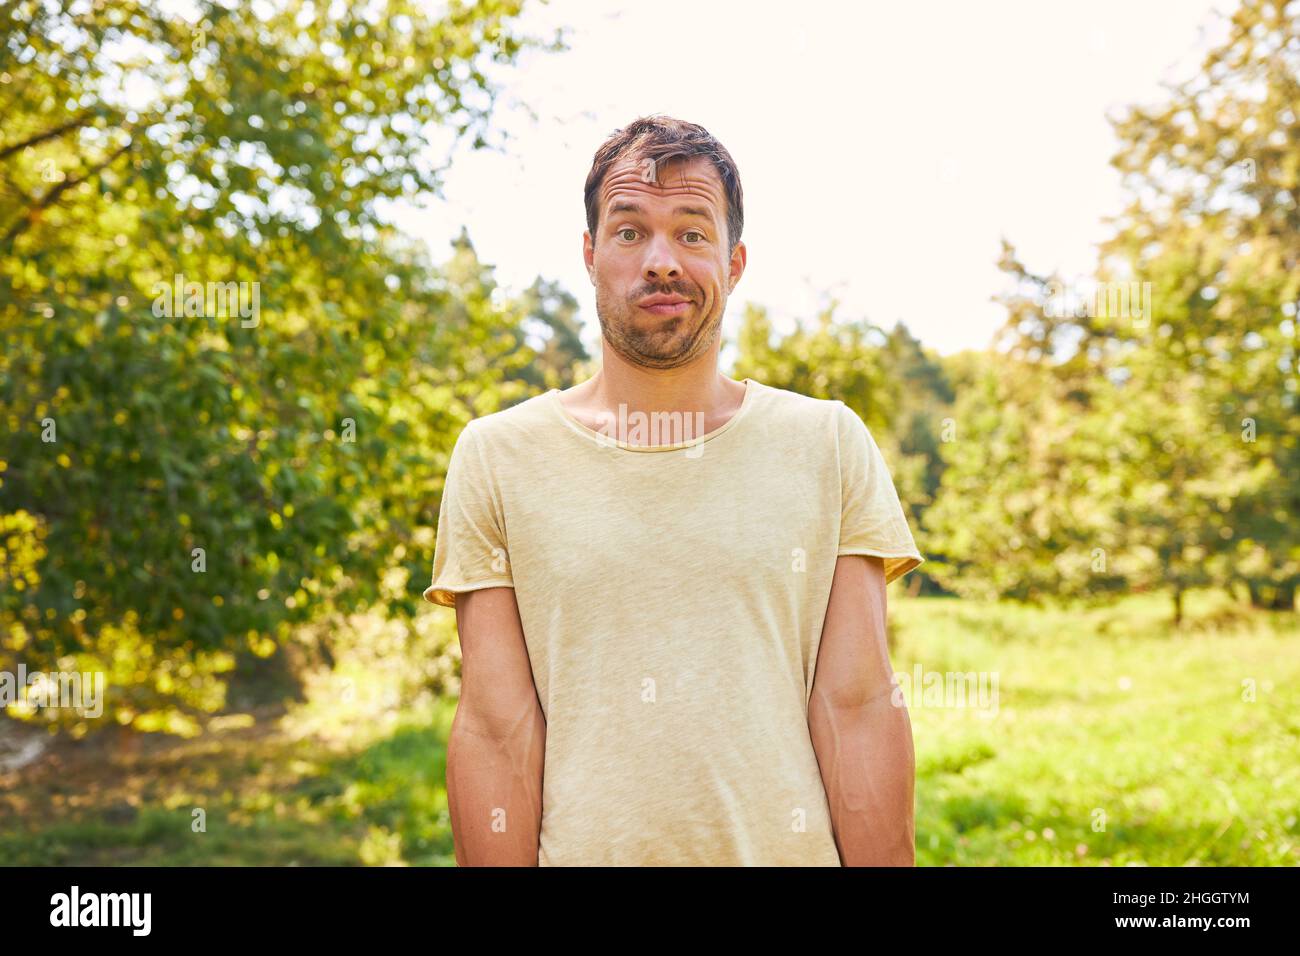 Der Mensch steht im Sommer in der Natur auf einer Wiese und macht eine lustige Grimasse Stockfoto